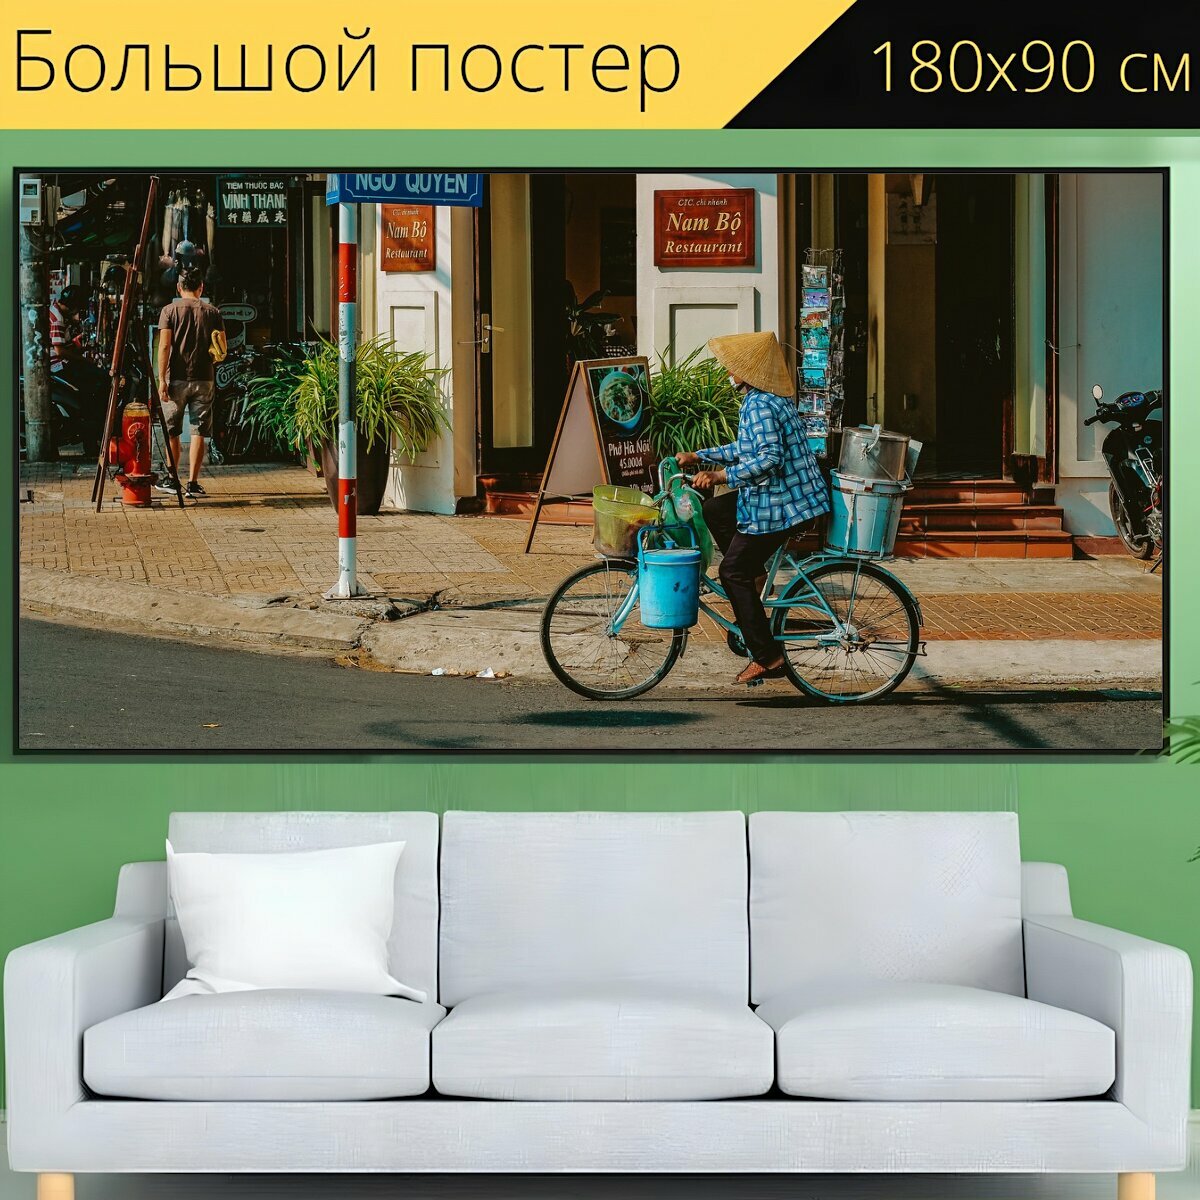 Большой постер "Улица, велосипед, город" 180 x 90 см. для интерьера